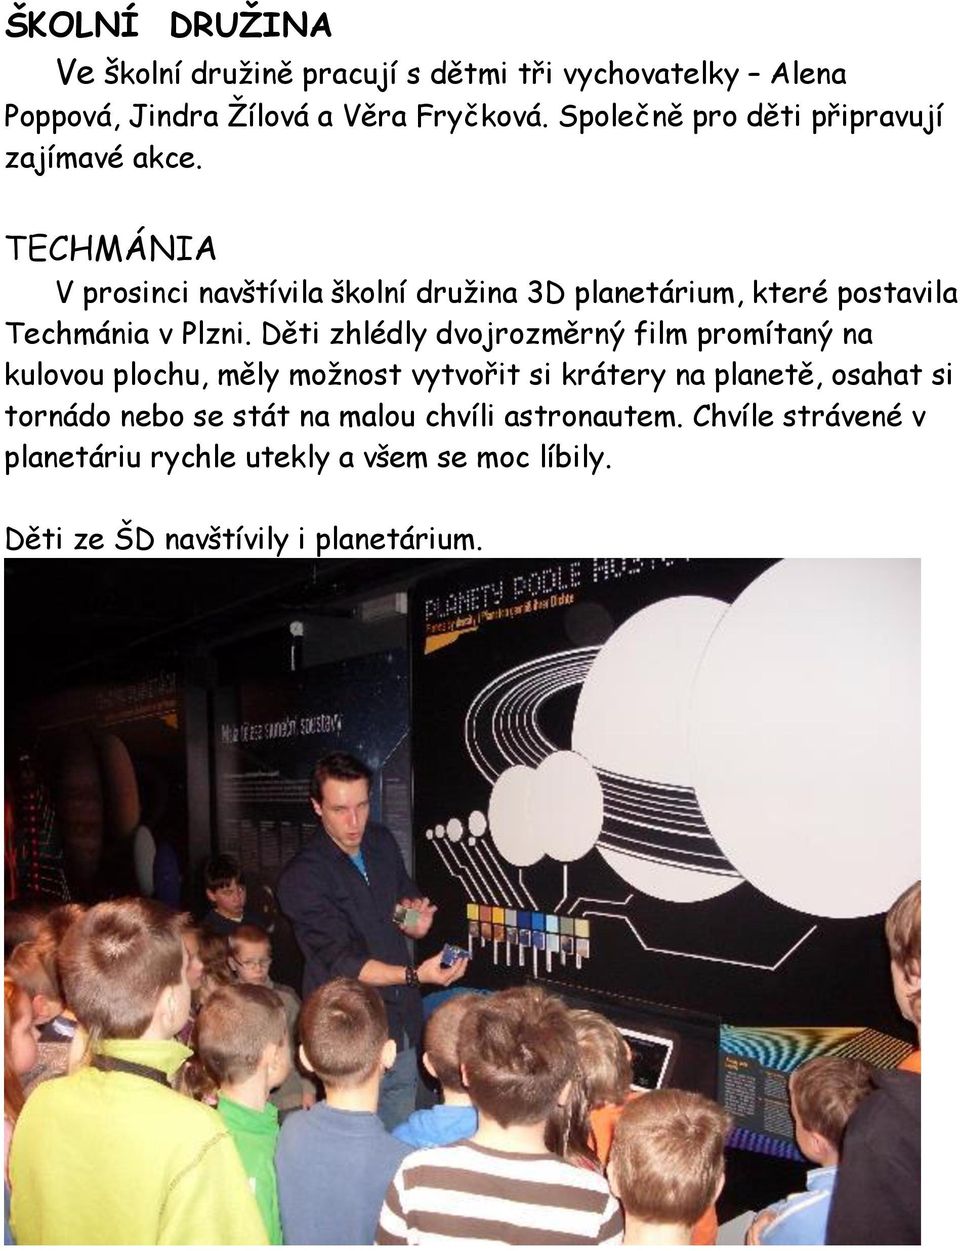 TECHMÁNIA V prosinci navštívila školní družina 3D planetárium, které postavila Techmánia v Plzni.